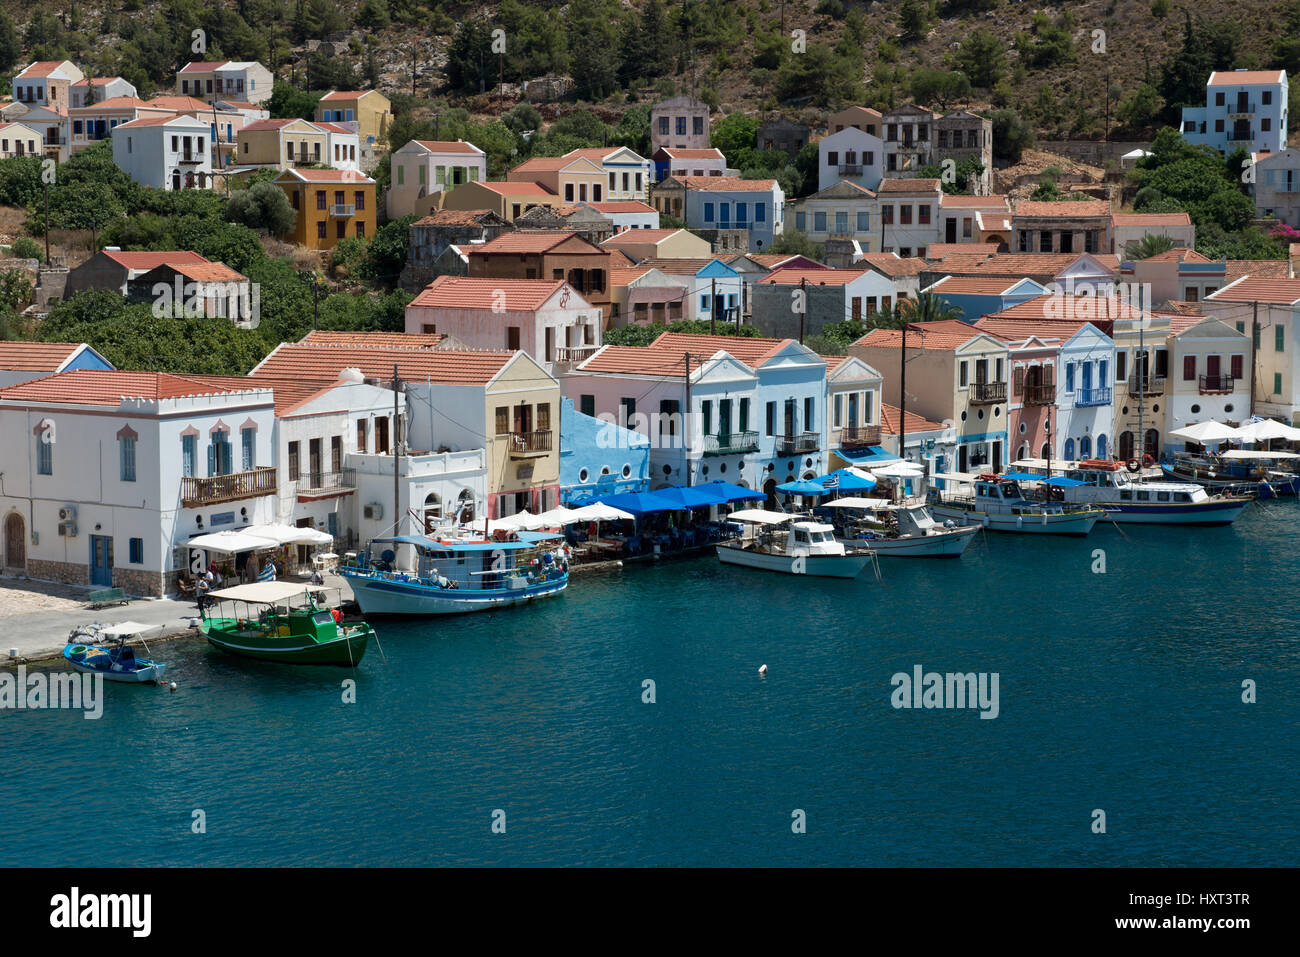 Hafenbecken mit kleinen Booten und einer Reihe von bunten Häusern vor grünem Wasser, Insel Kastellorizo, Dodekanes, Griechenland Stock Photo